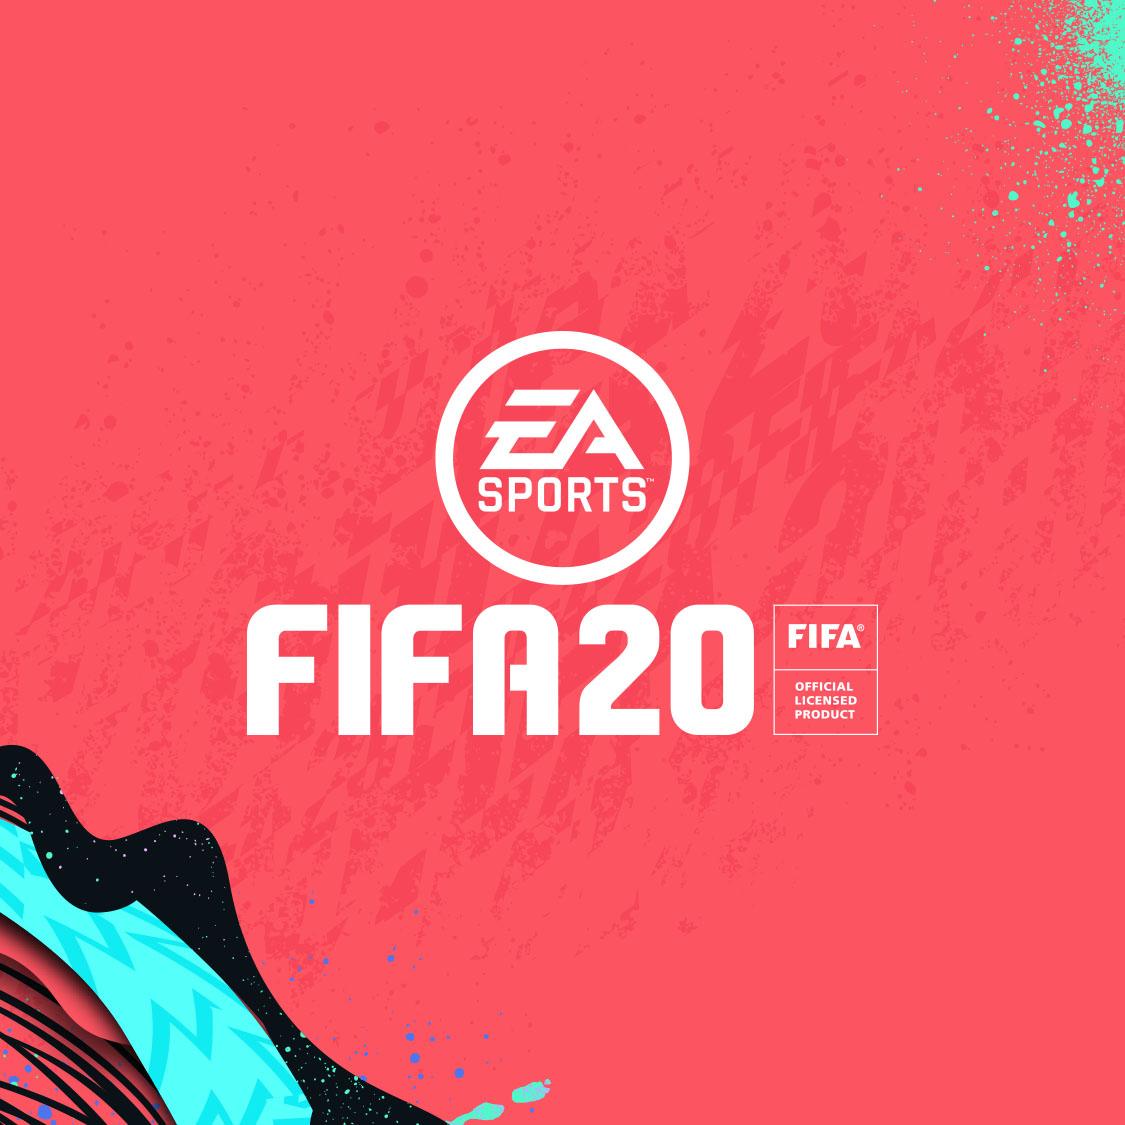 FIFA 20: rumores, filtraciones y "wishlists" - FIFA 20 está por llegar y te contamos rumores, filtraciones y lista de deseos de los fanáticos de la franquicia próxima a cumplir 3 décadas de vida.